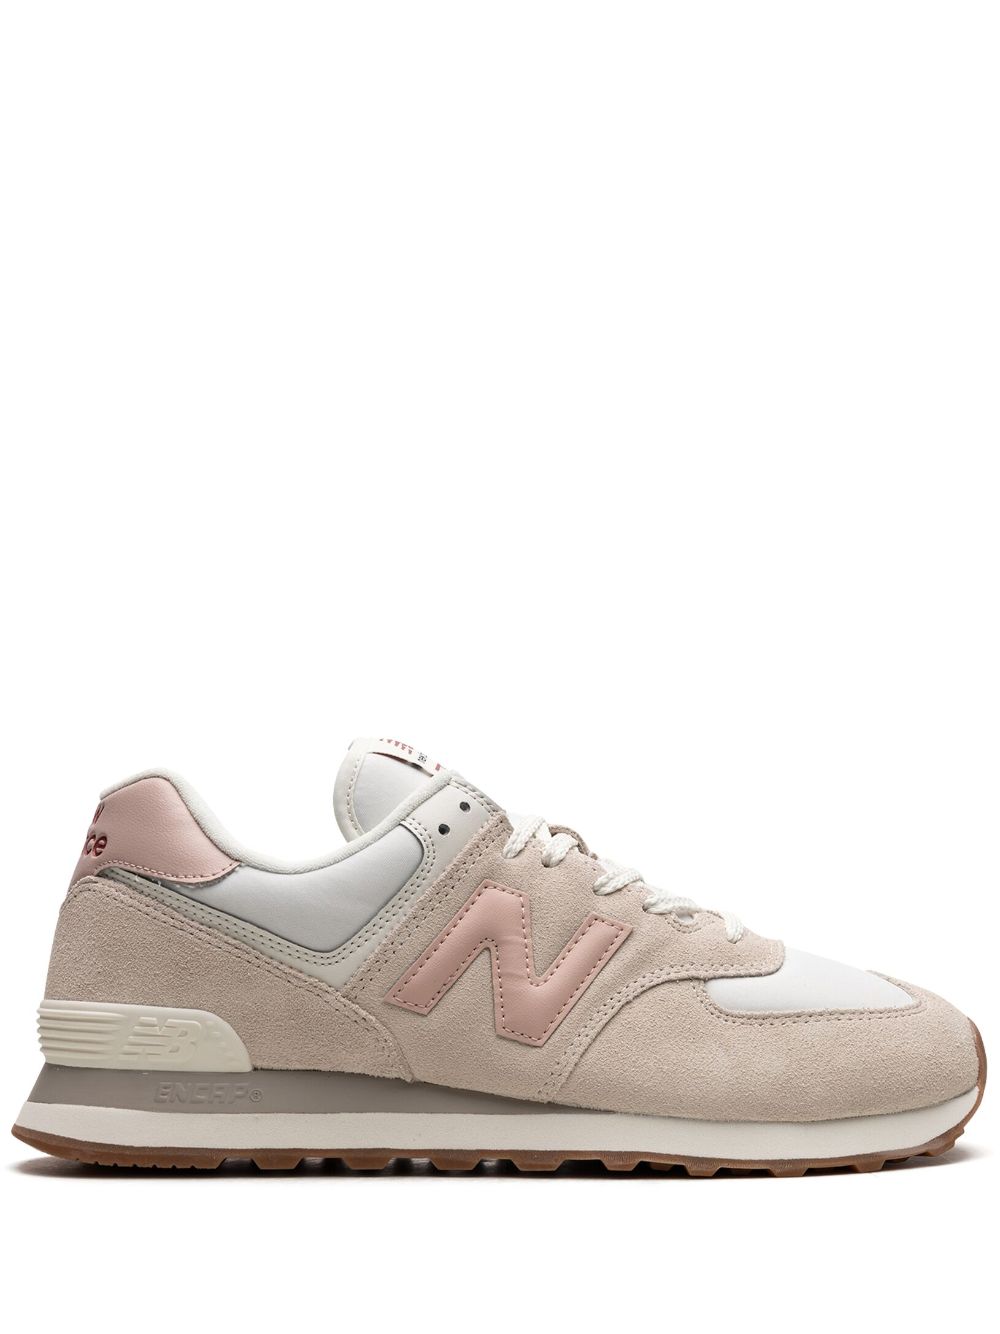 New Balance 574 "White/Pink/Gum" sneakers - Neutrals von New Balance